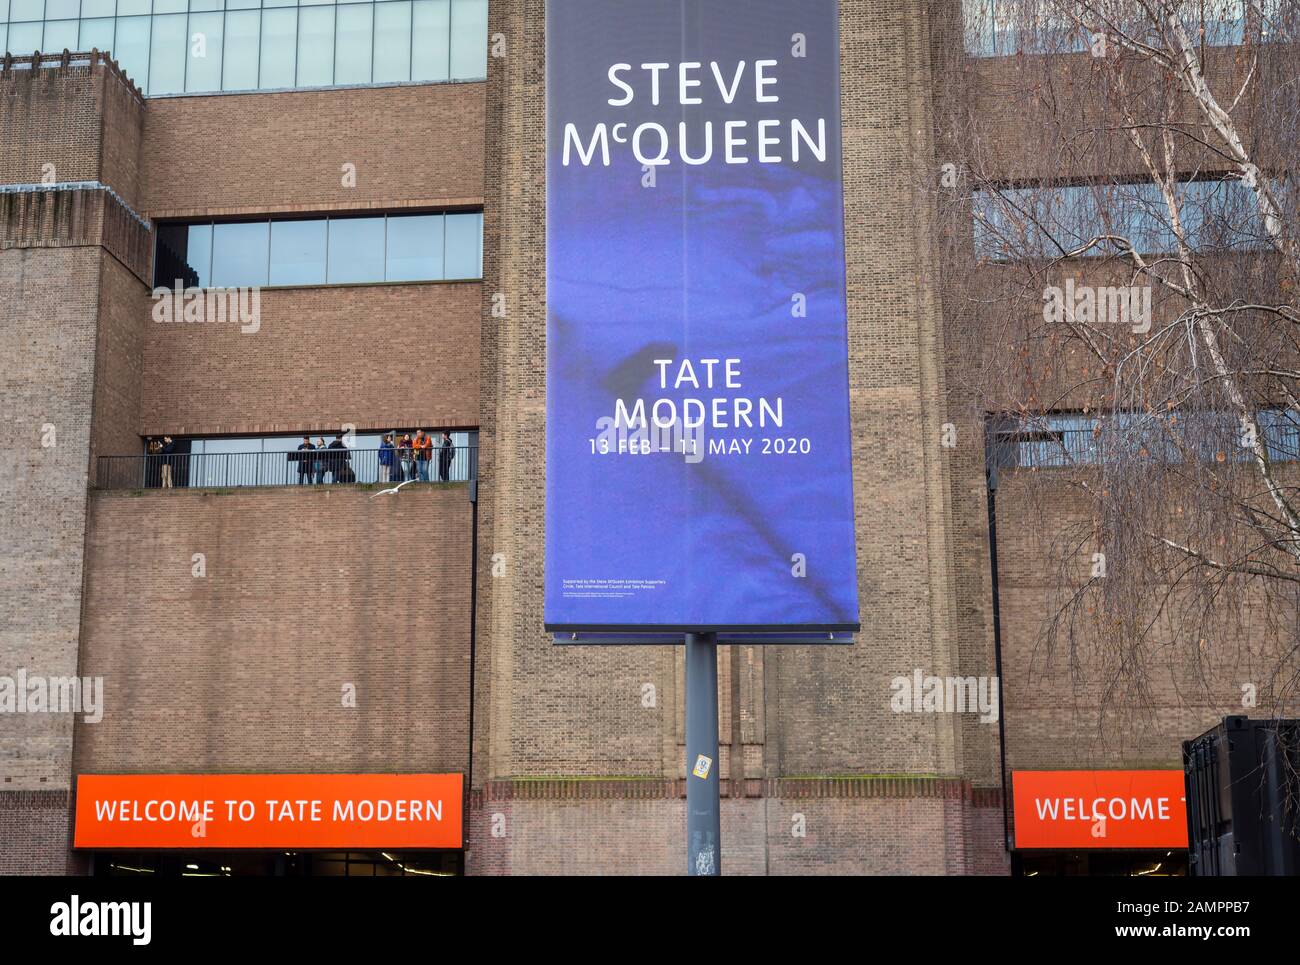 Banner außerhalb von Tate Modern in London Werbung für die bevorstehende Ausstellung von Steve McQueen, die zwischen dem 13. Februar und dem 11. Mai 2020 stattfinden wird. Stockfoto